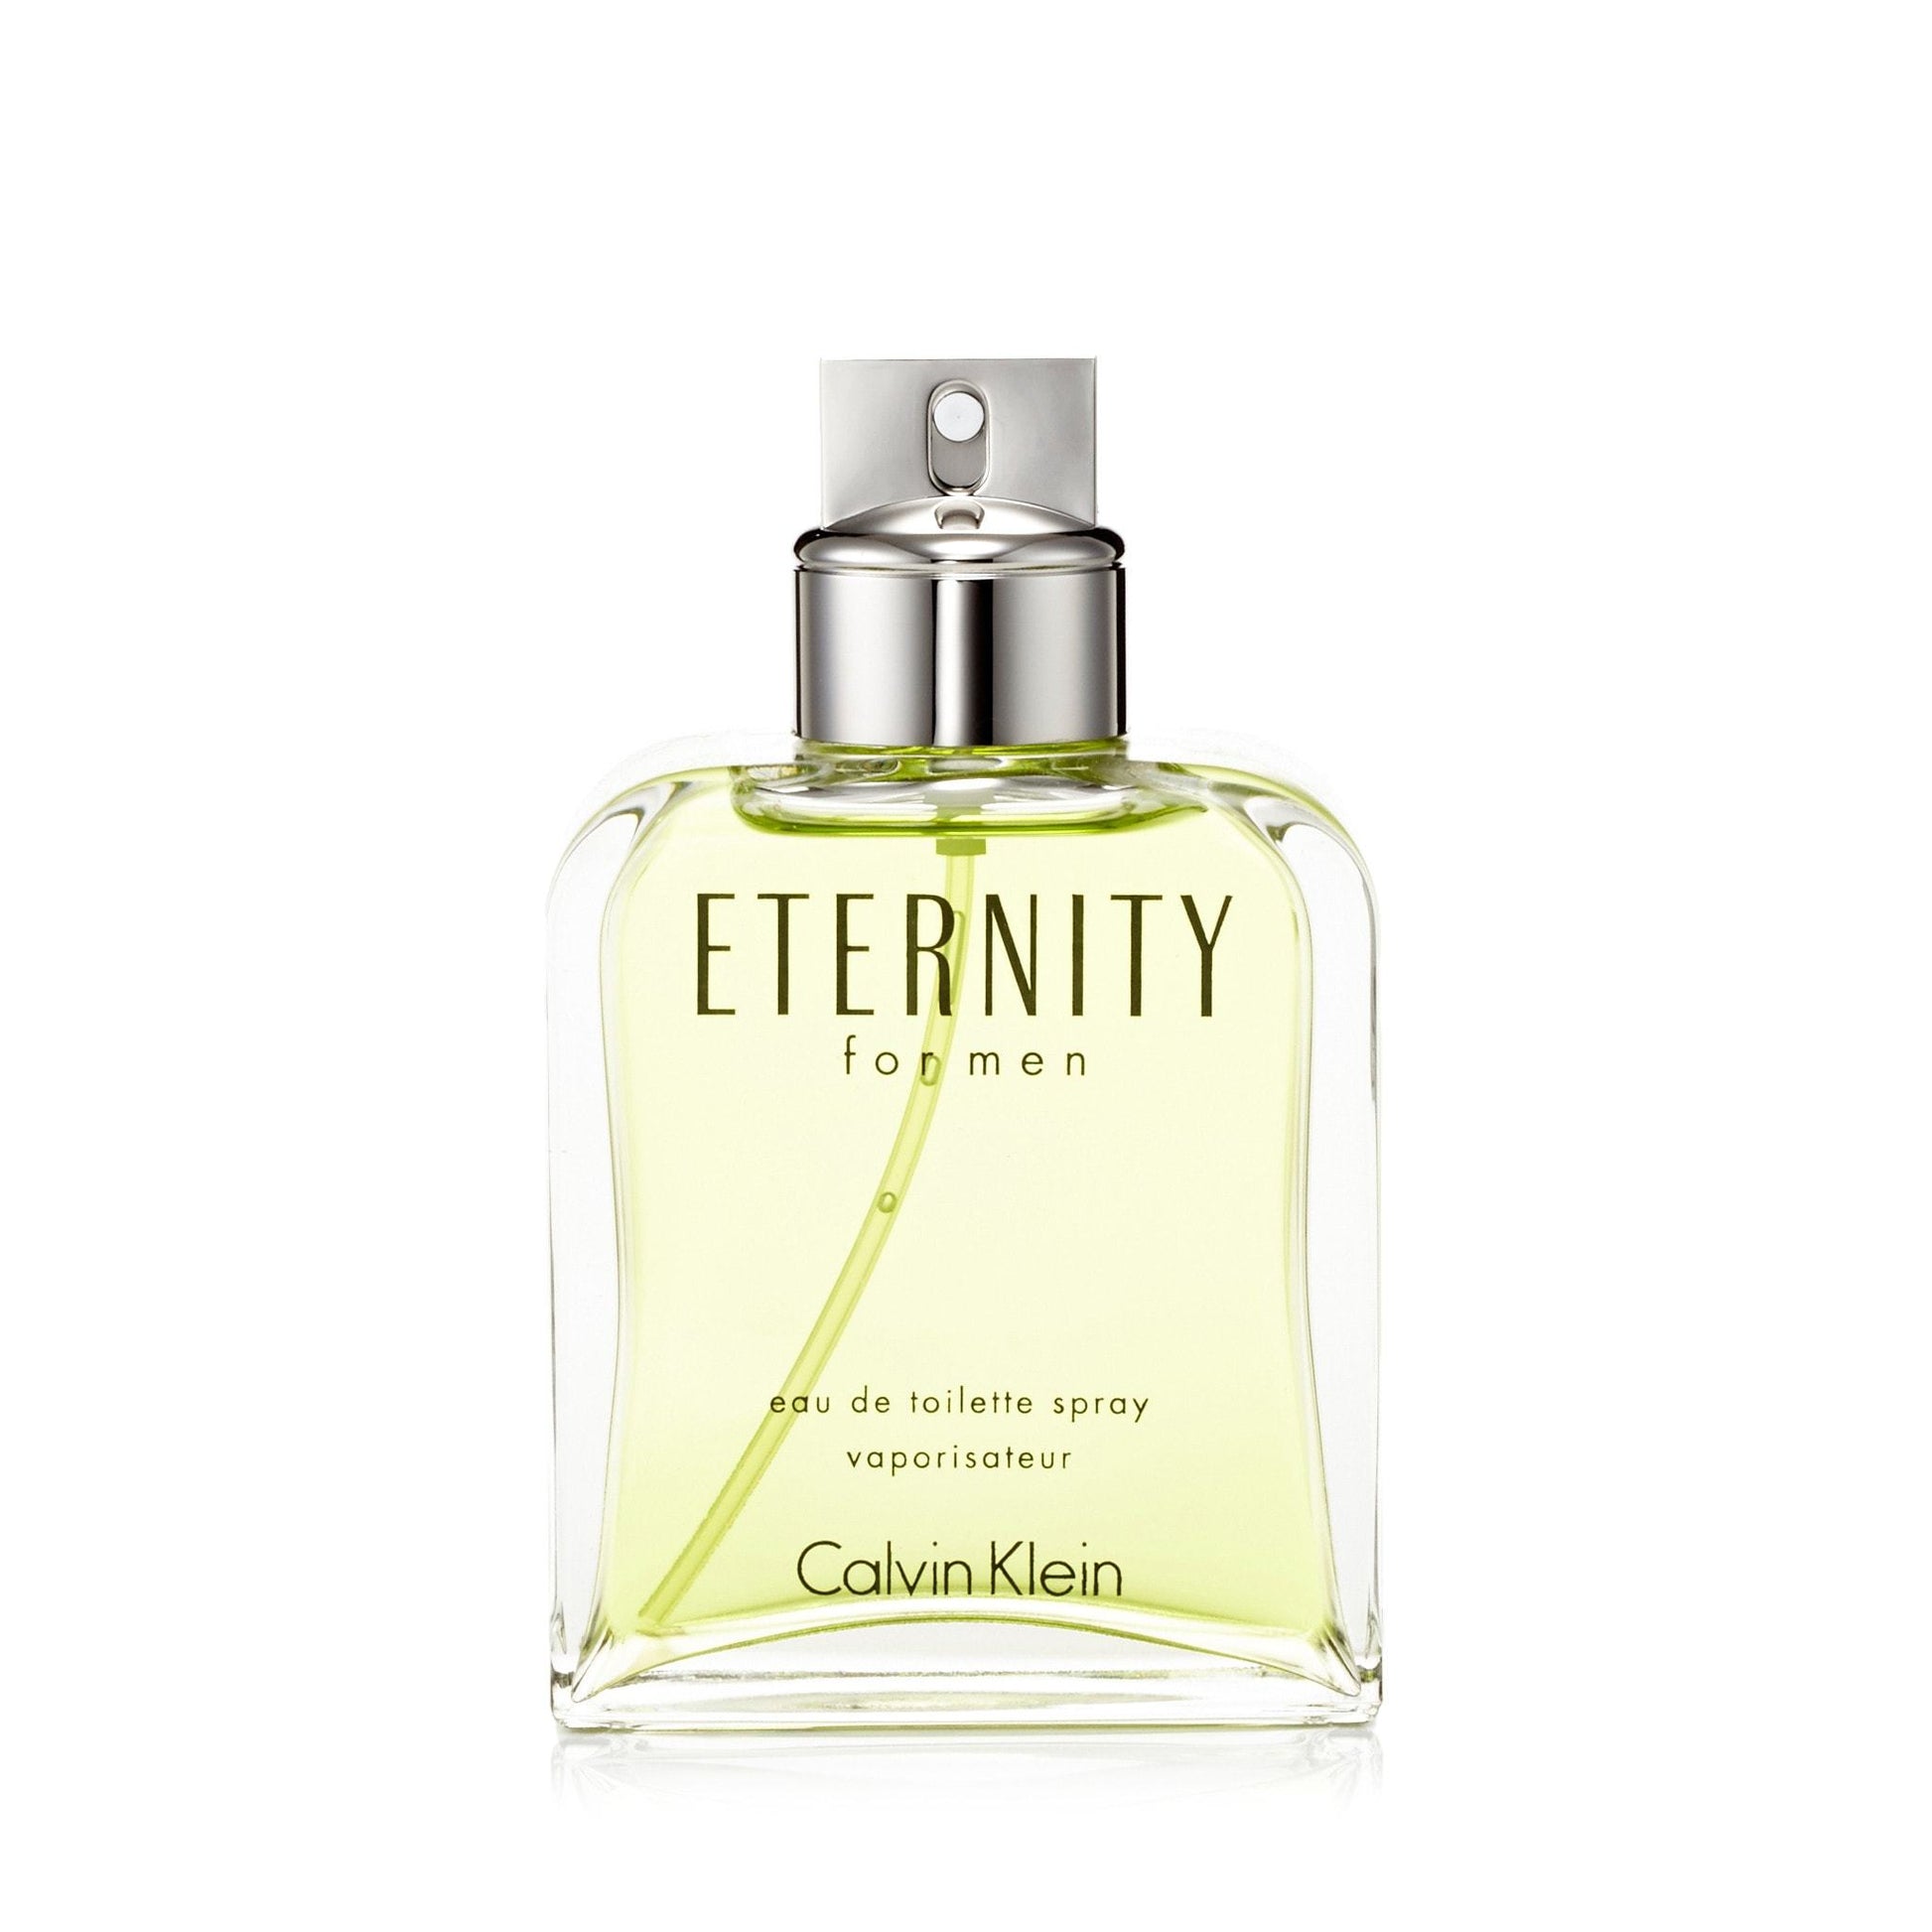 Eternity Eau de Toilette Spray for Men by Calvin Klein, Product image 2